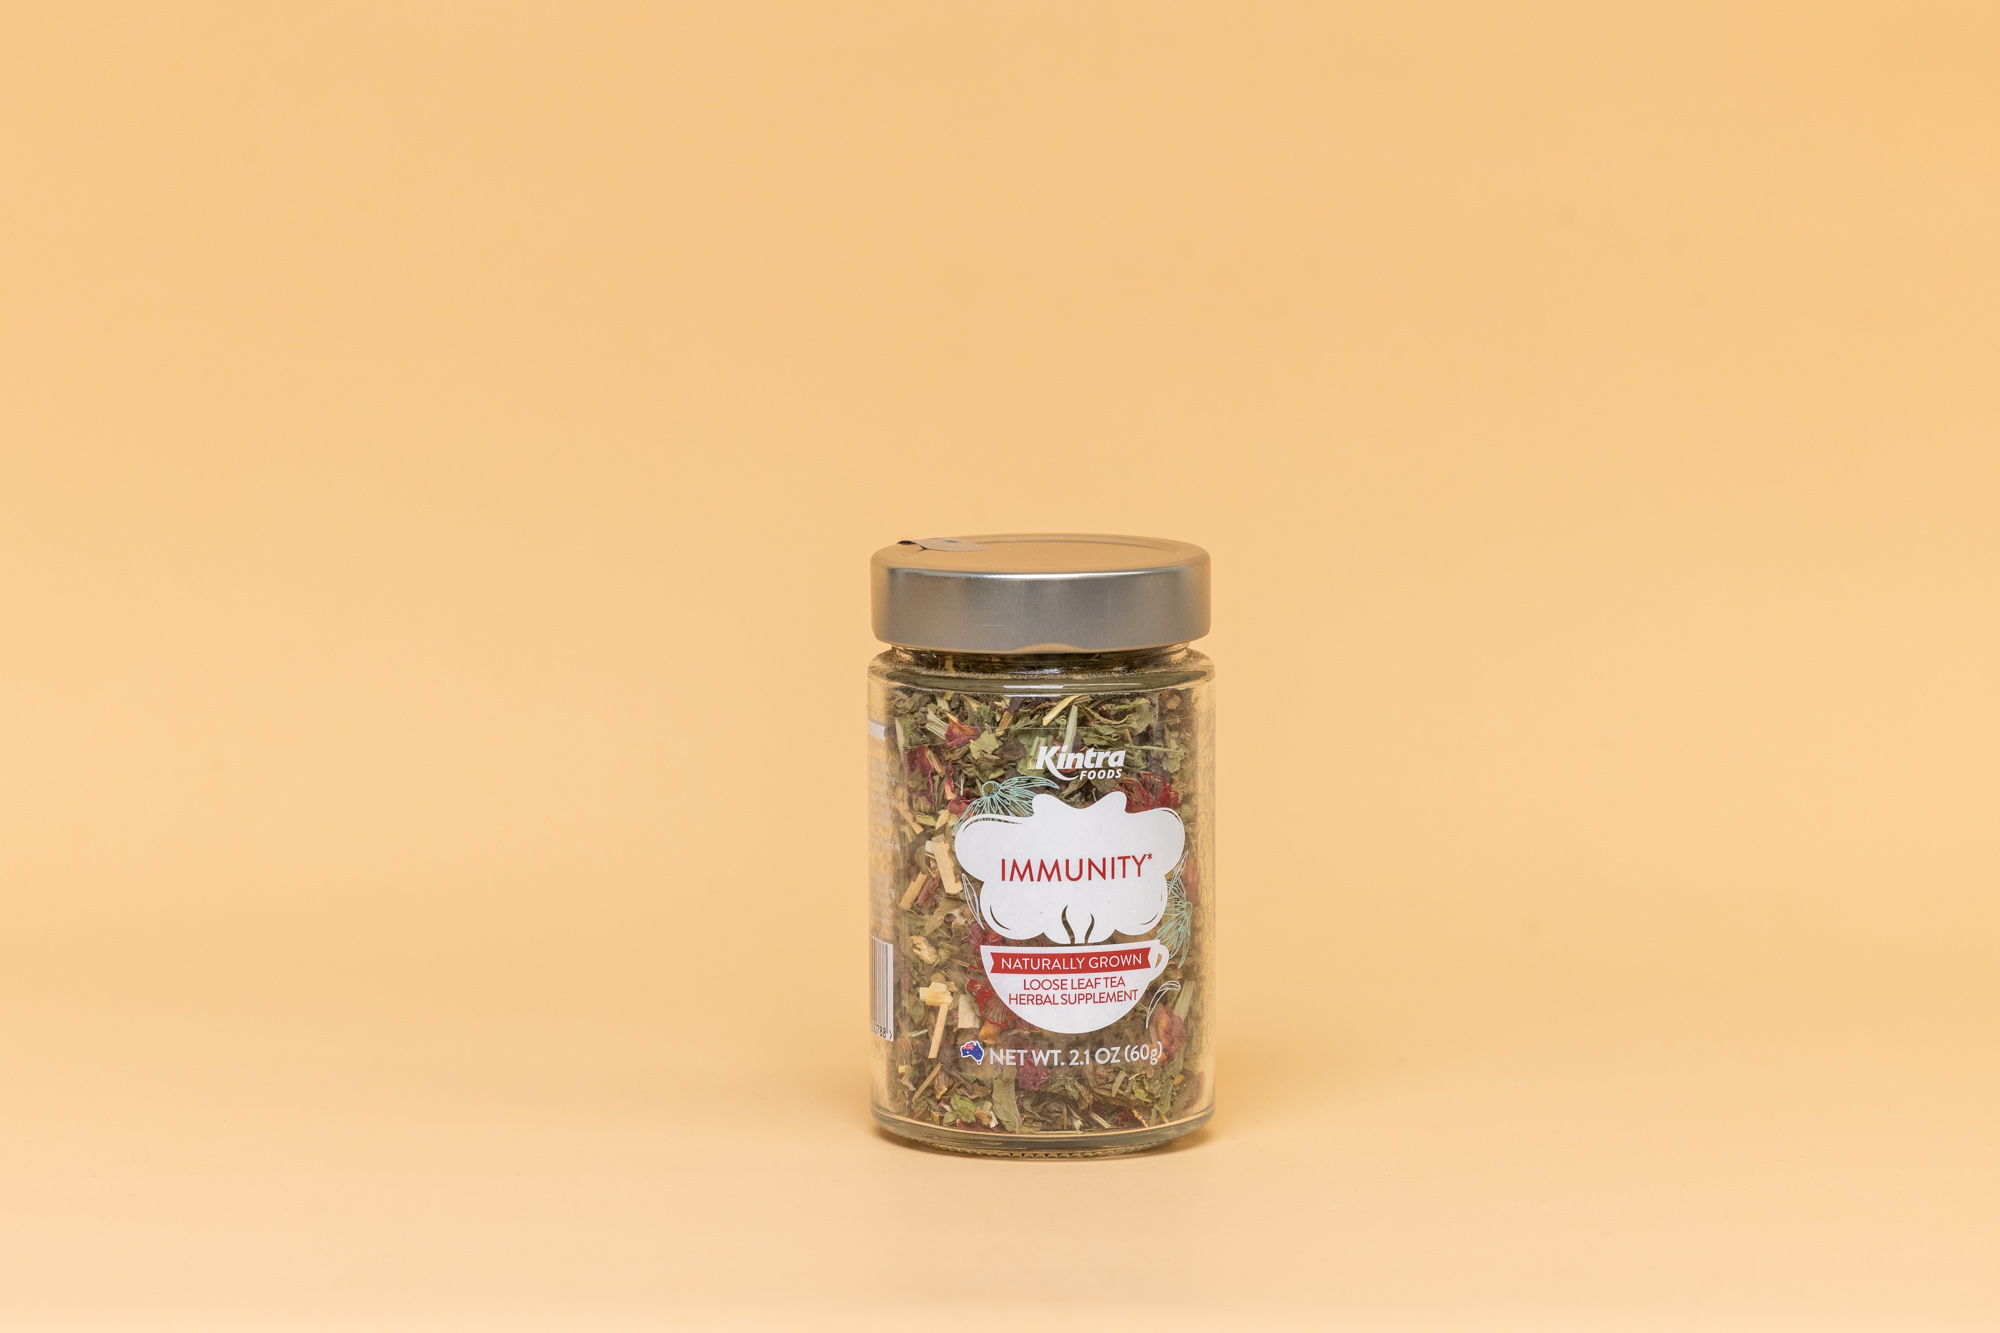 Kintra immunity loose leaf tea 60g